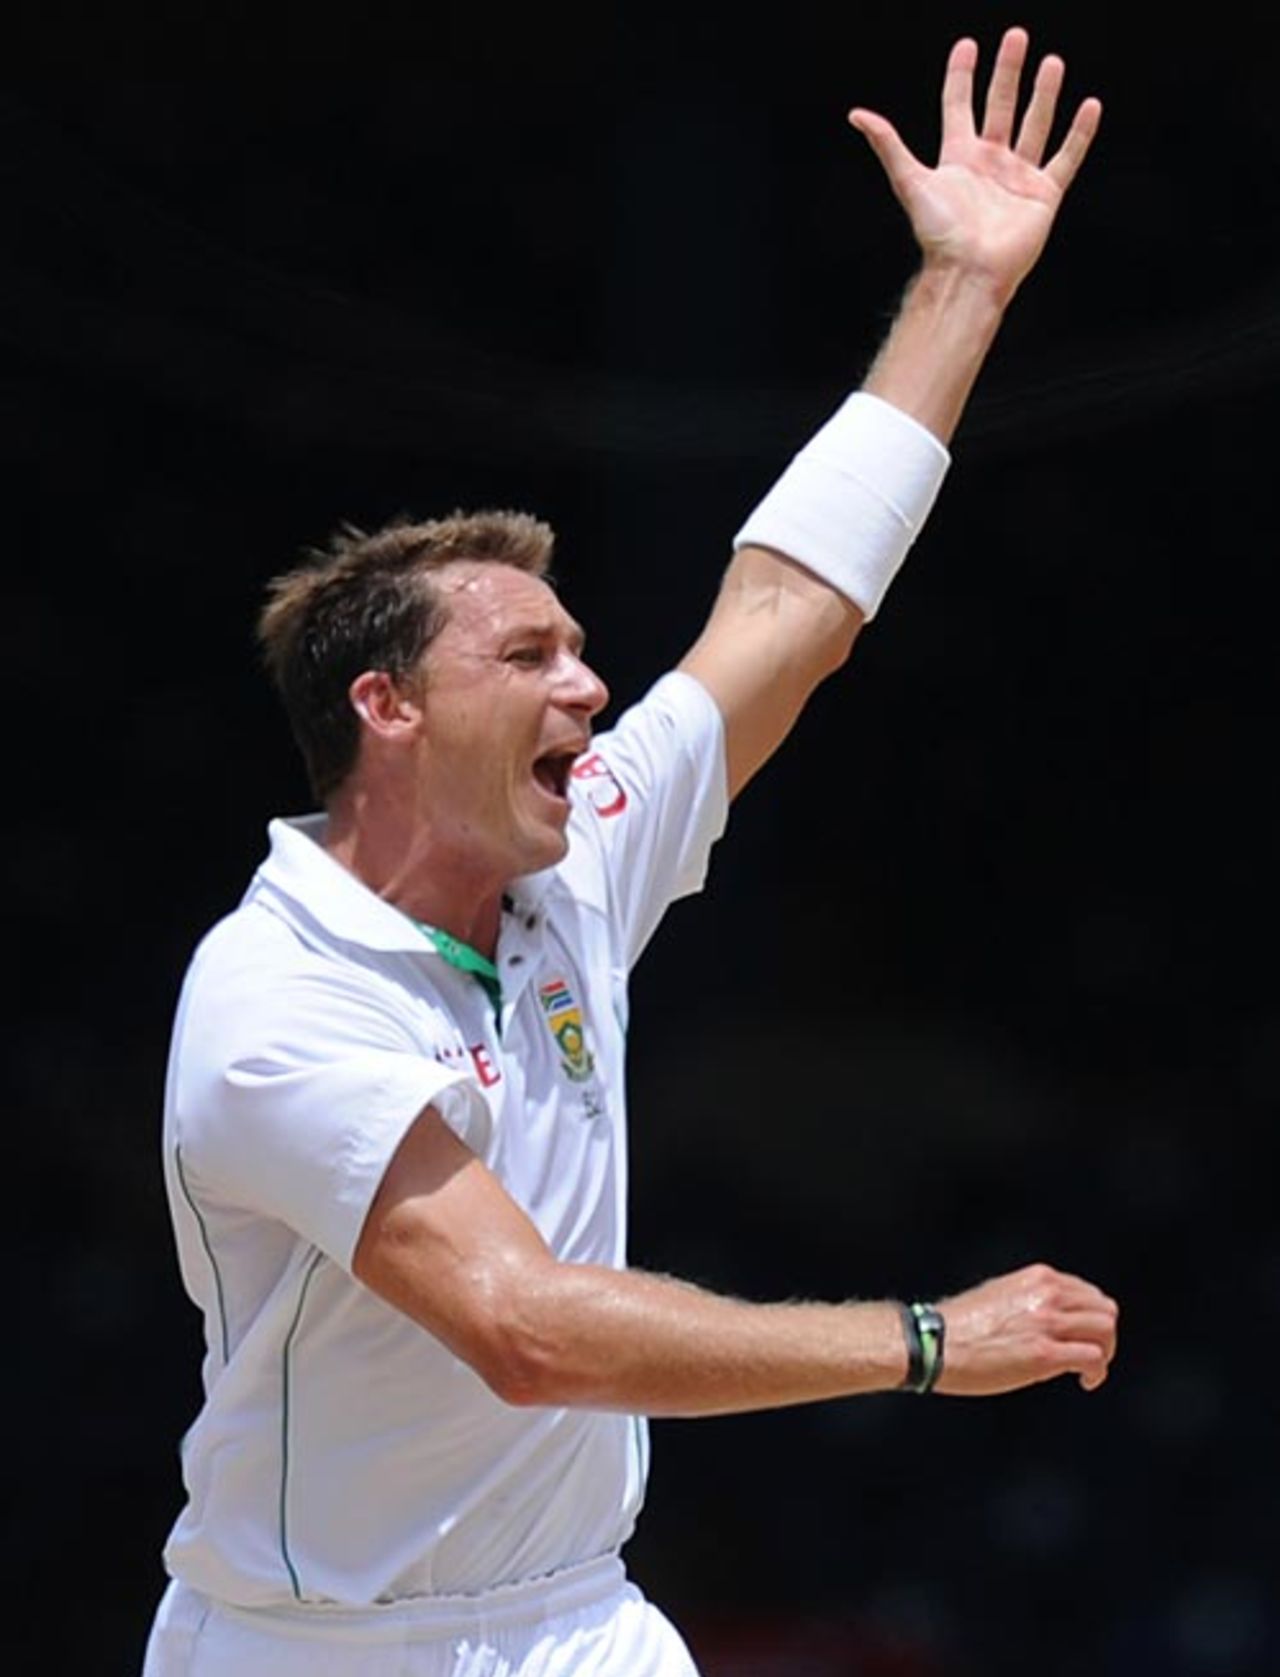 Dale Steyn is overjoyed after dismissing Brendan Nash, West Indies v South Africa, 1st Test, Trinidad, 4th day, June 13, 2010